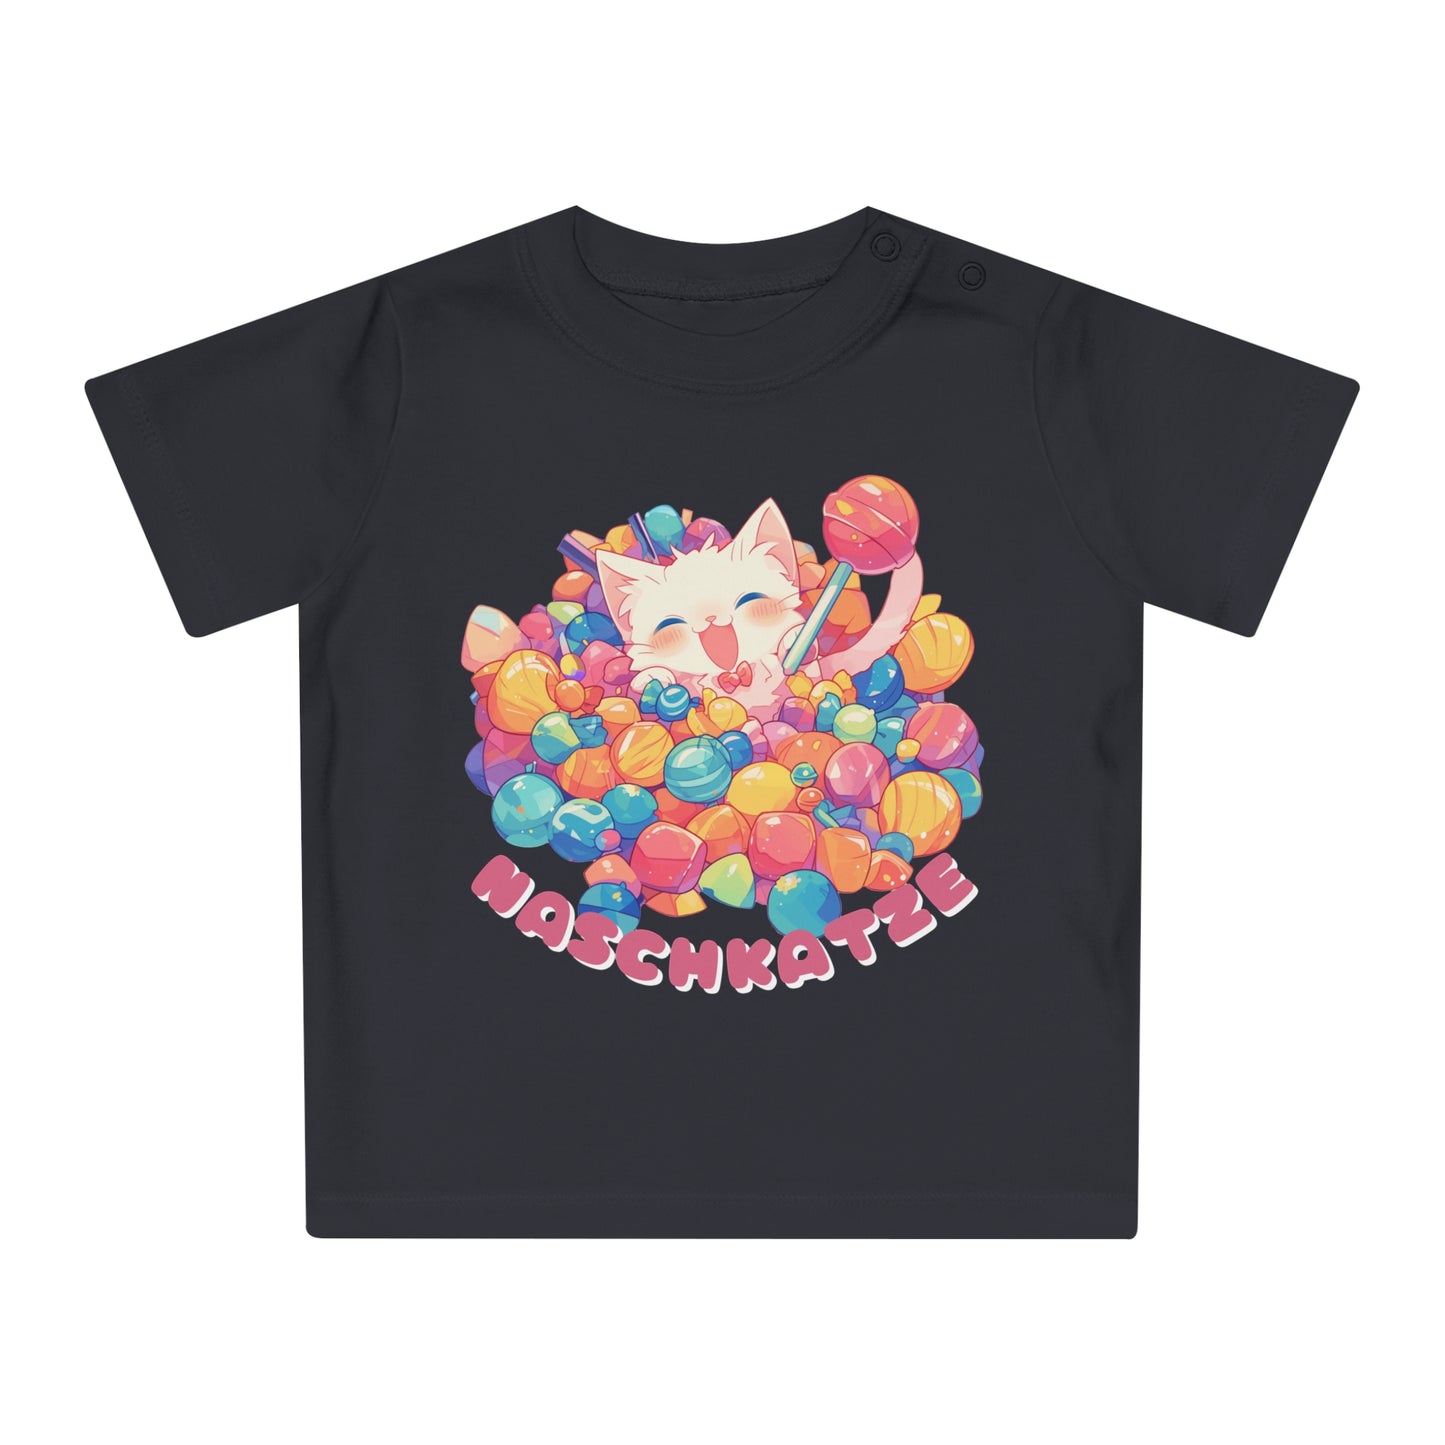 Baby Grafik-T-Shirt Naschkatze